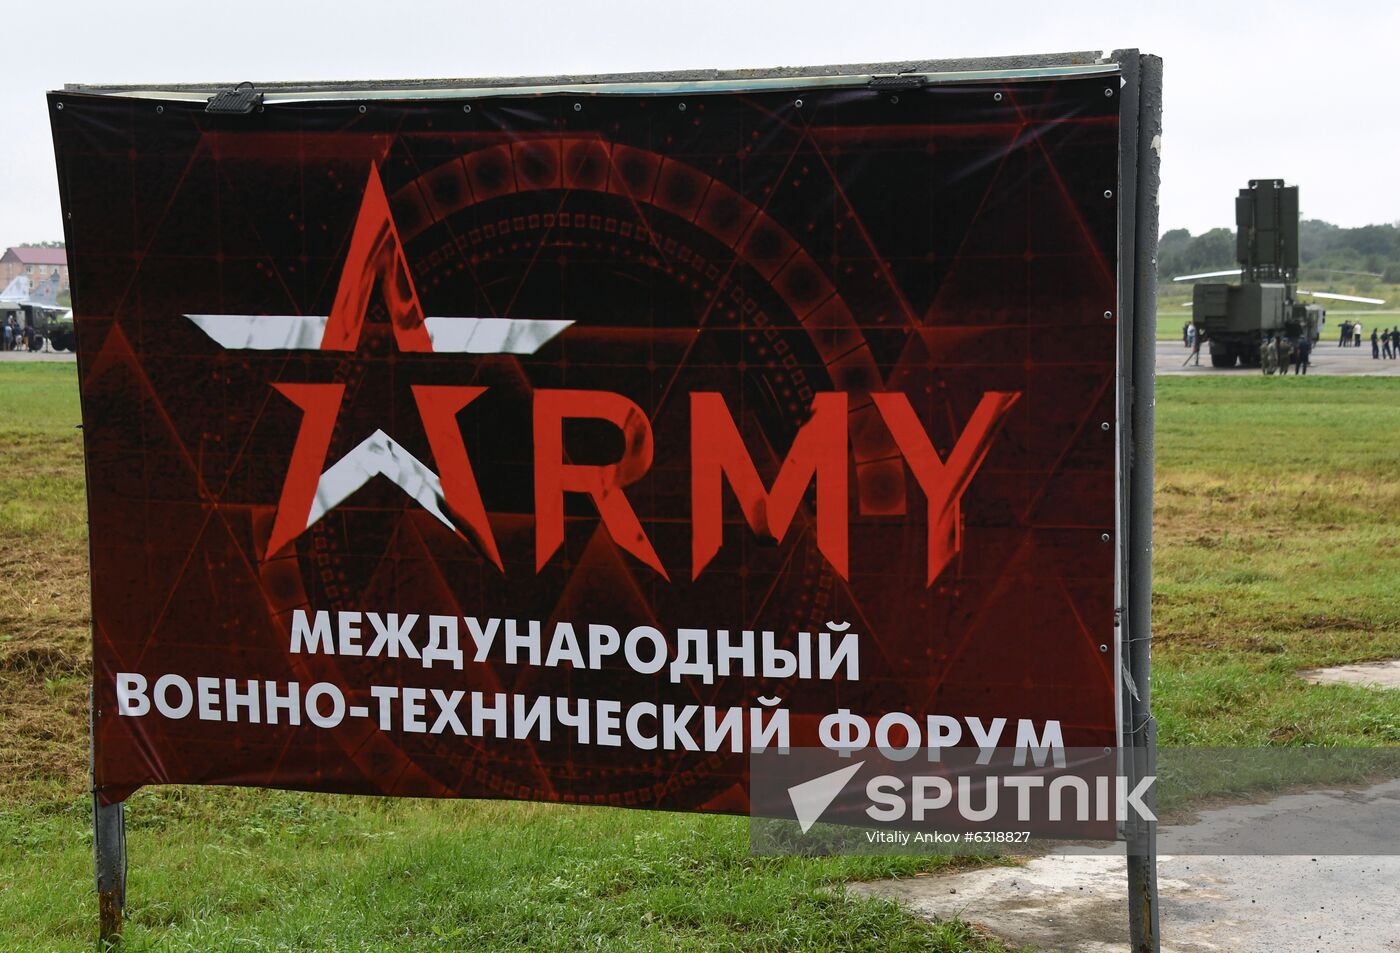 Russia Army Forum Regions